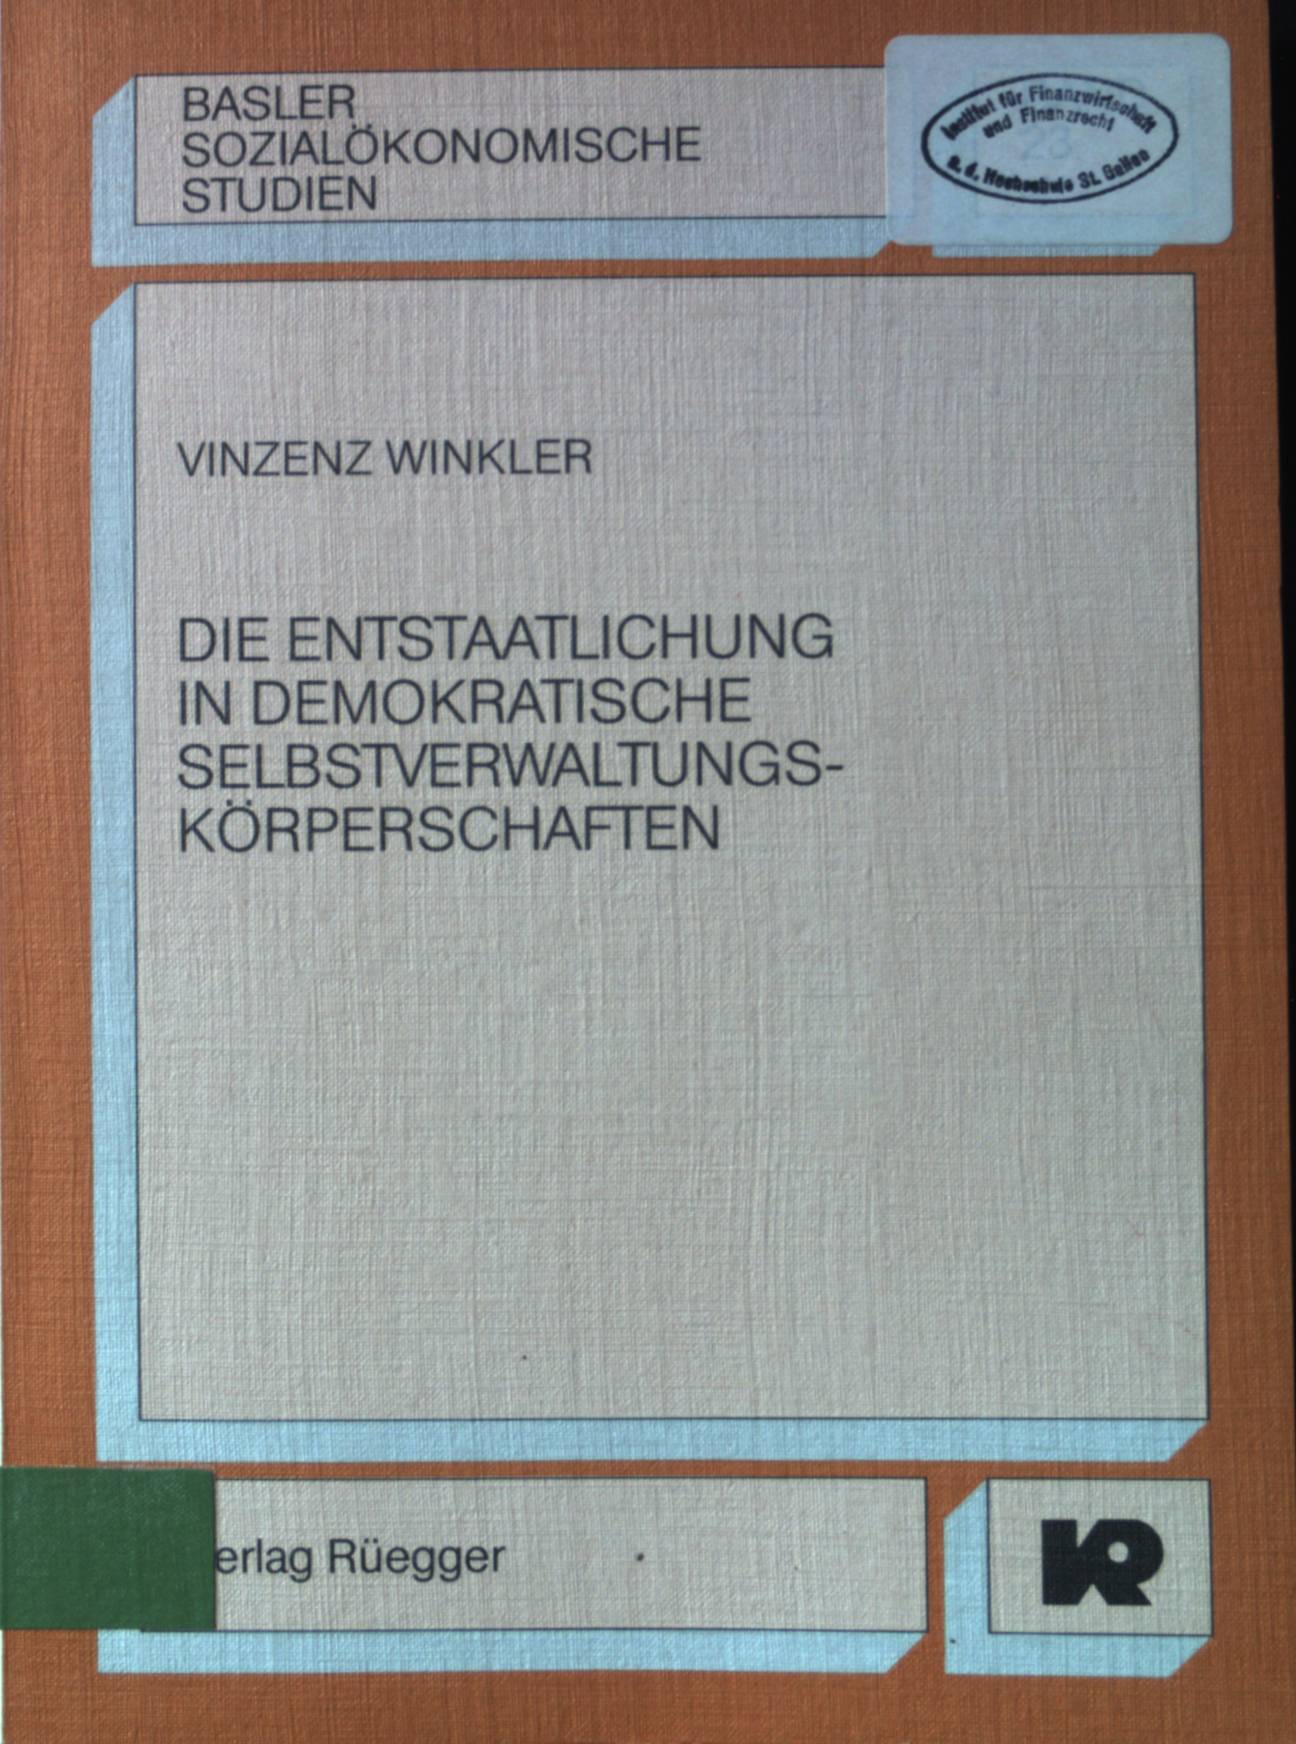 Die Entstaatlichung in demokratische Selbstverwaltungskörperschaften. Basler sozialökonomische Studien ; Bd. 23 - Winkler, Vinzenz